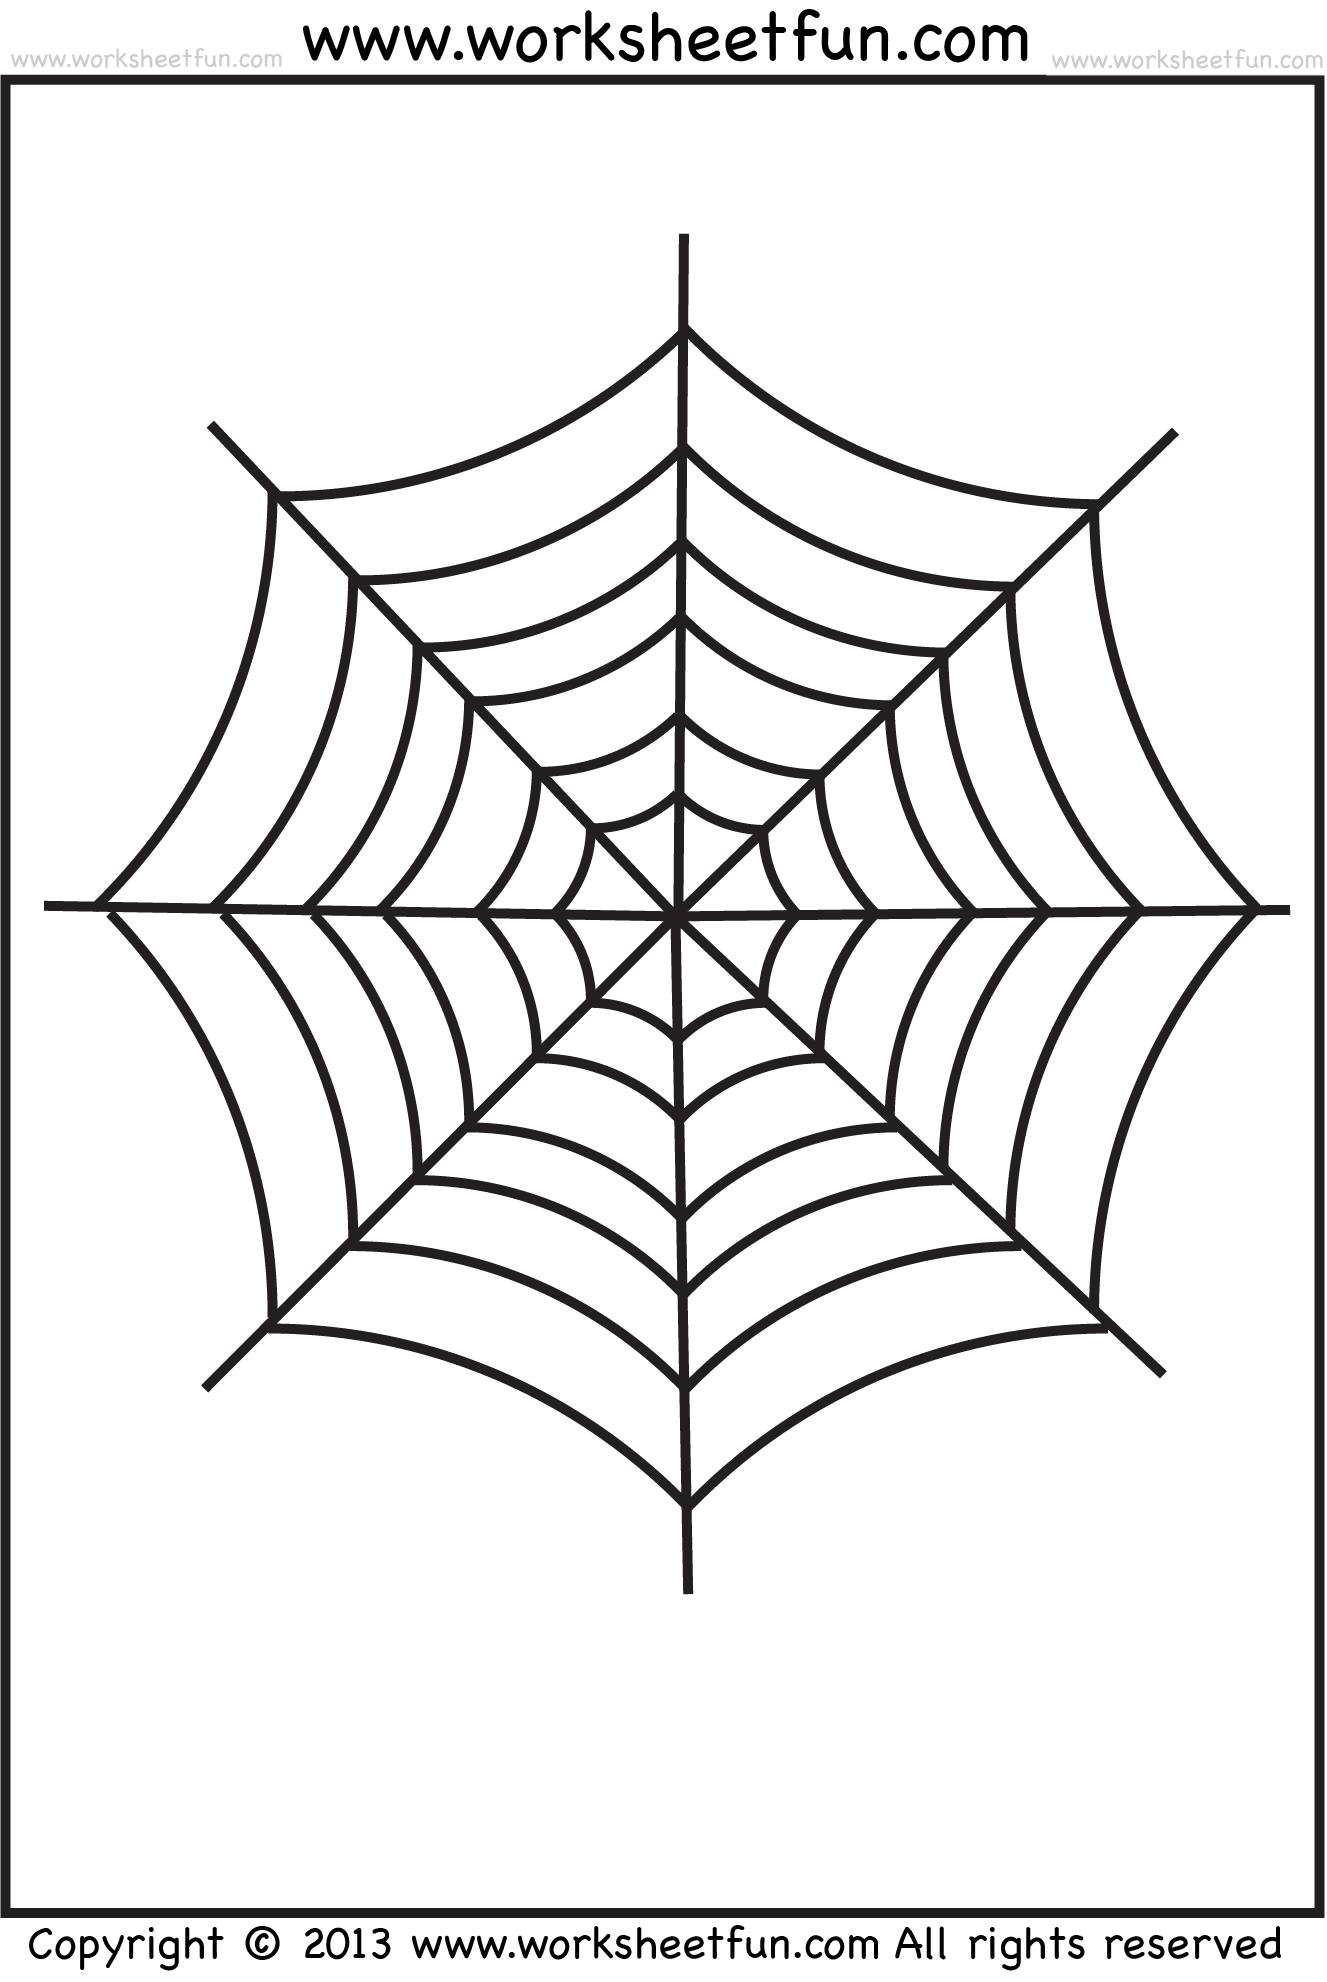 Spider Web Tracing One Halloween Worksheets Free Printable Worksheets Worksheetfun